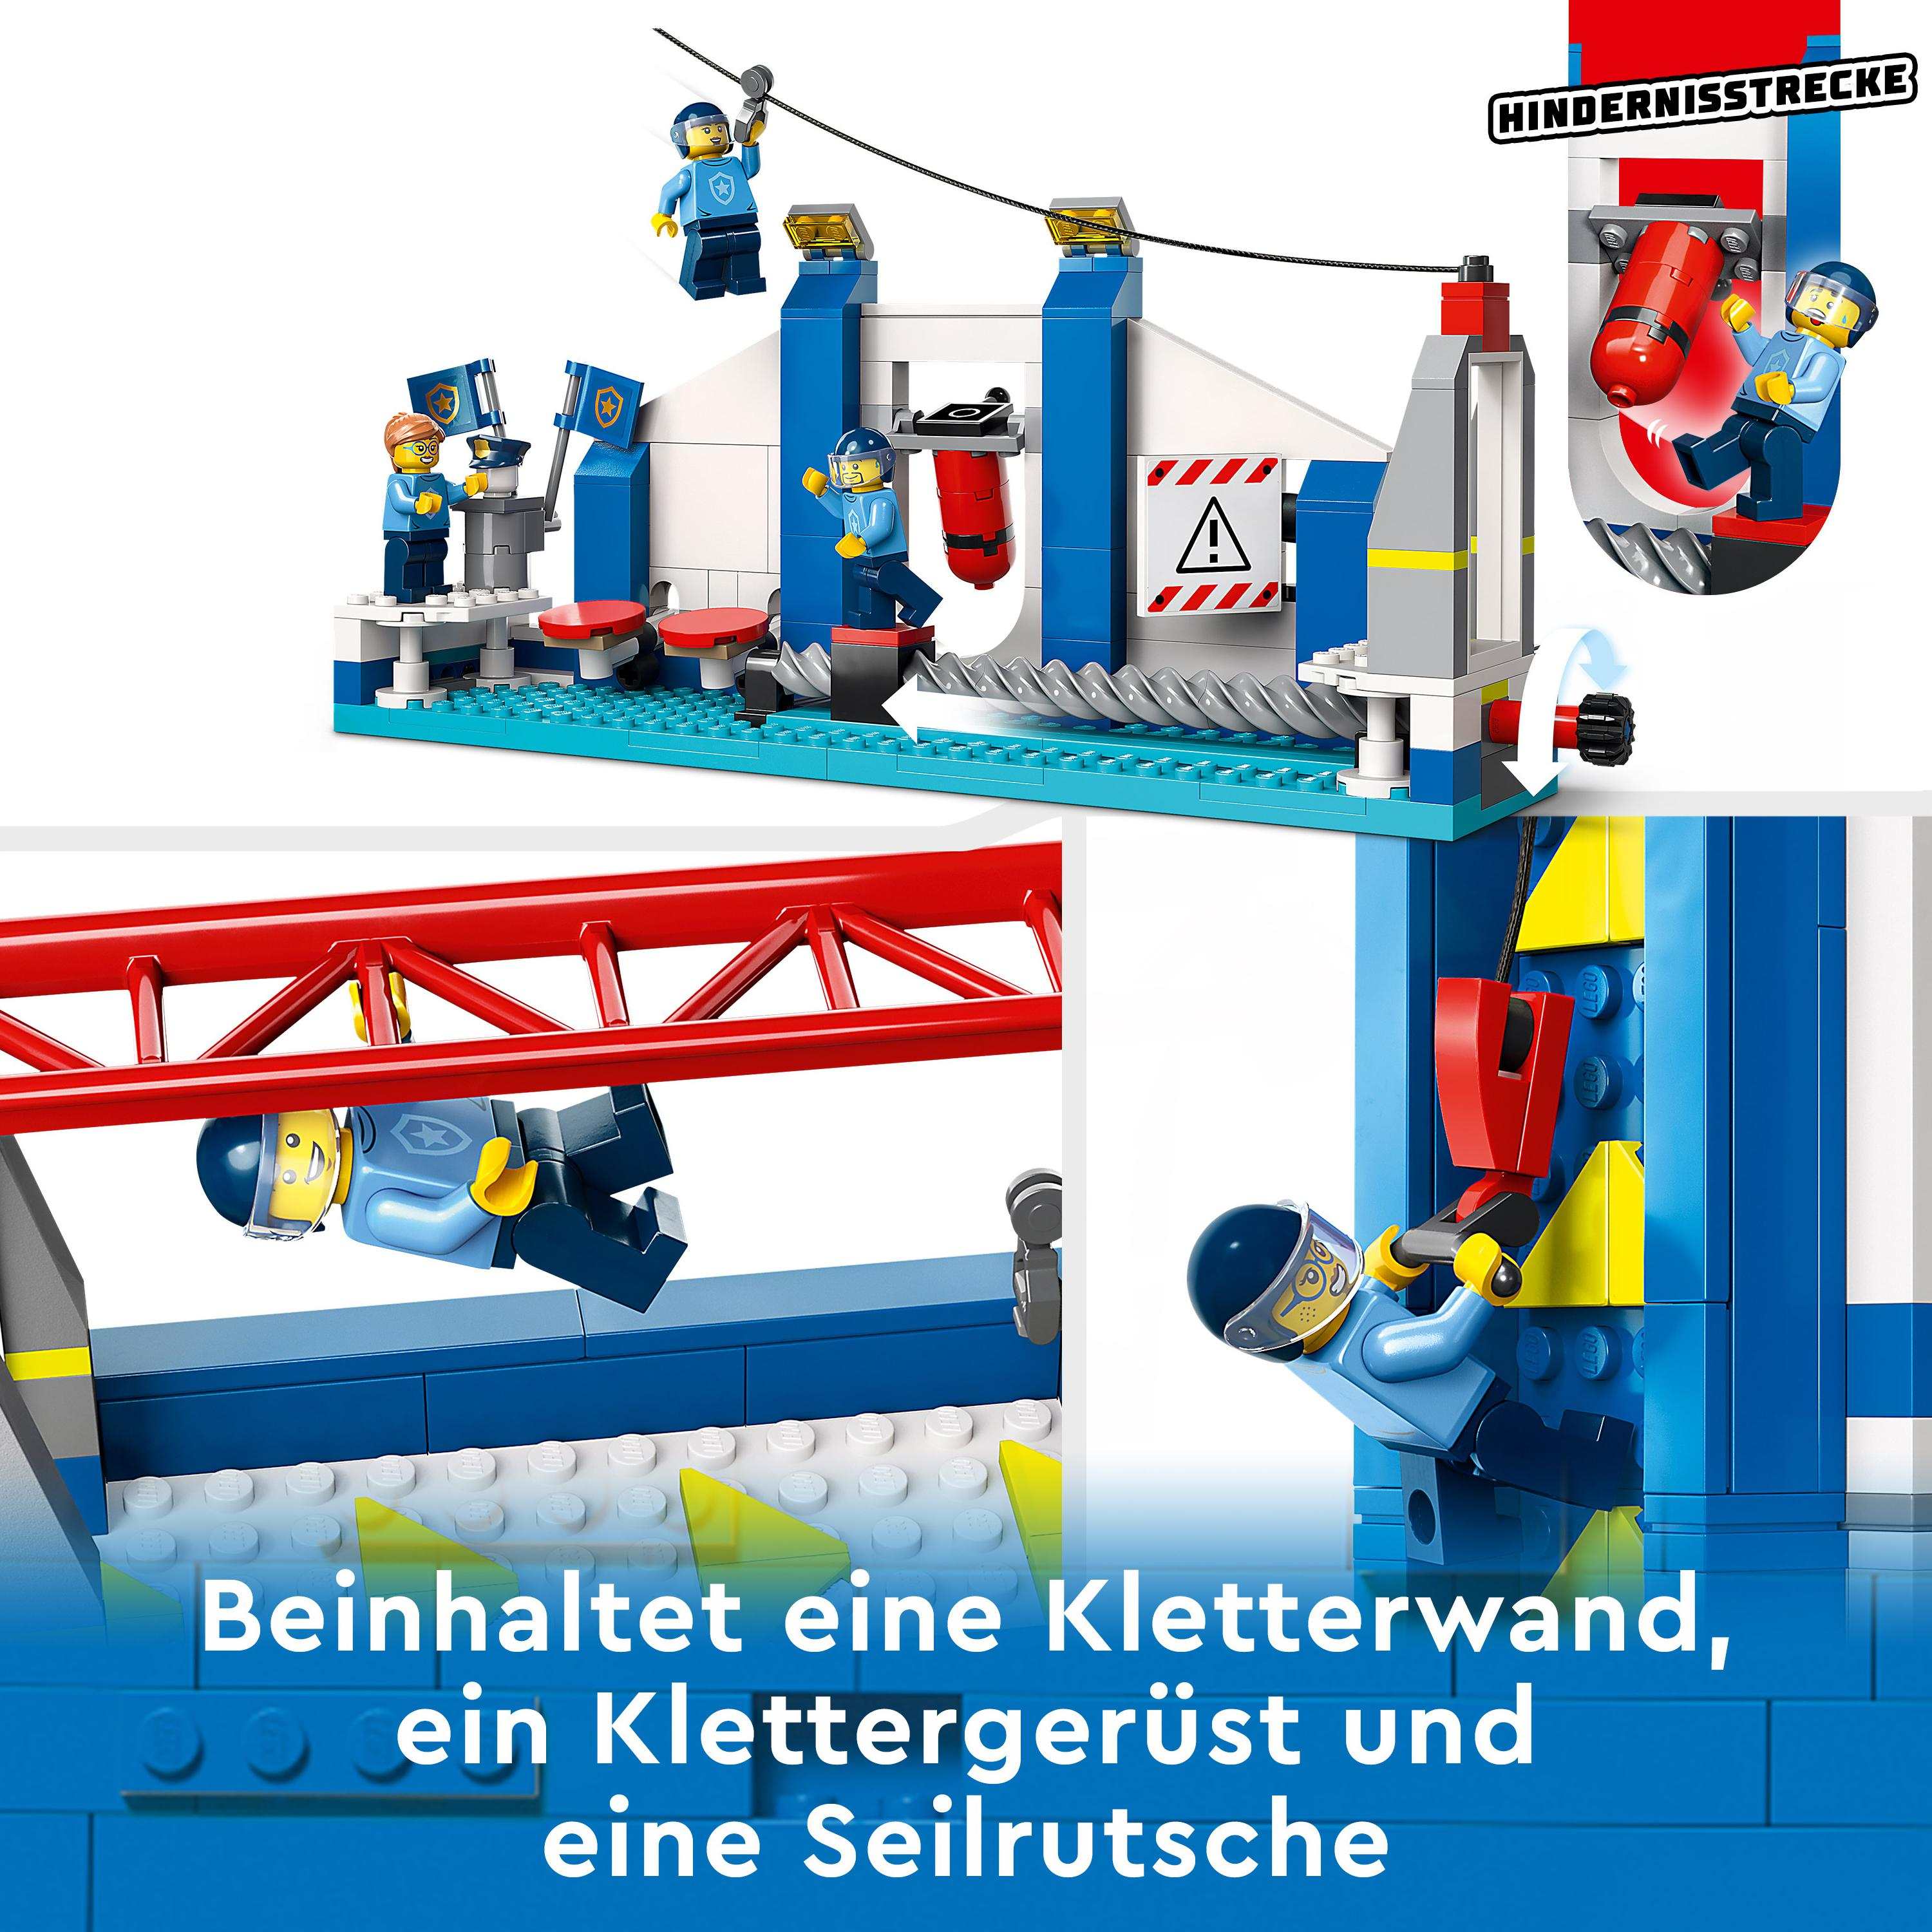 Mehrfarbig LEGO 60372 Bausatz, City Polizeischule